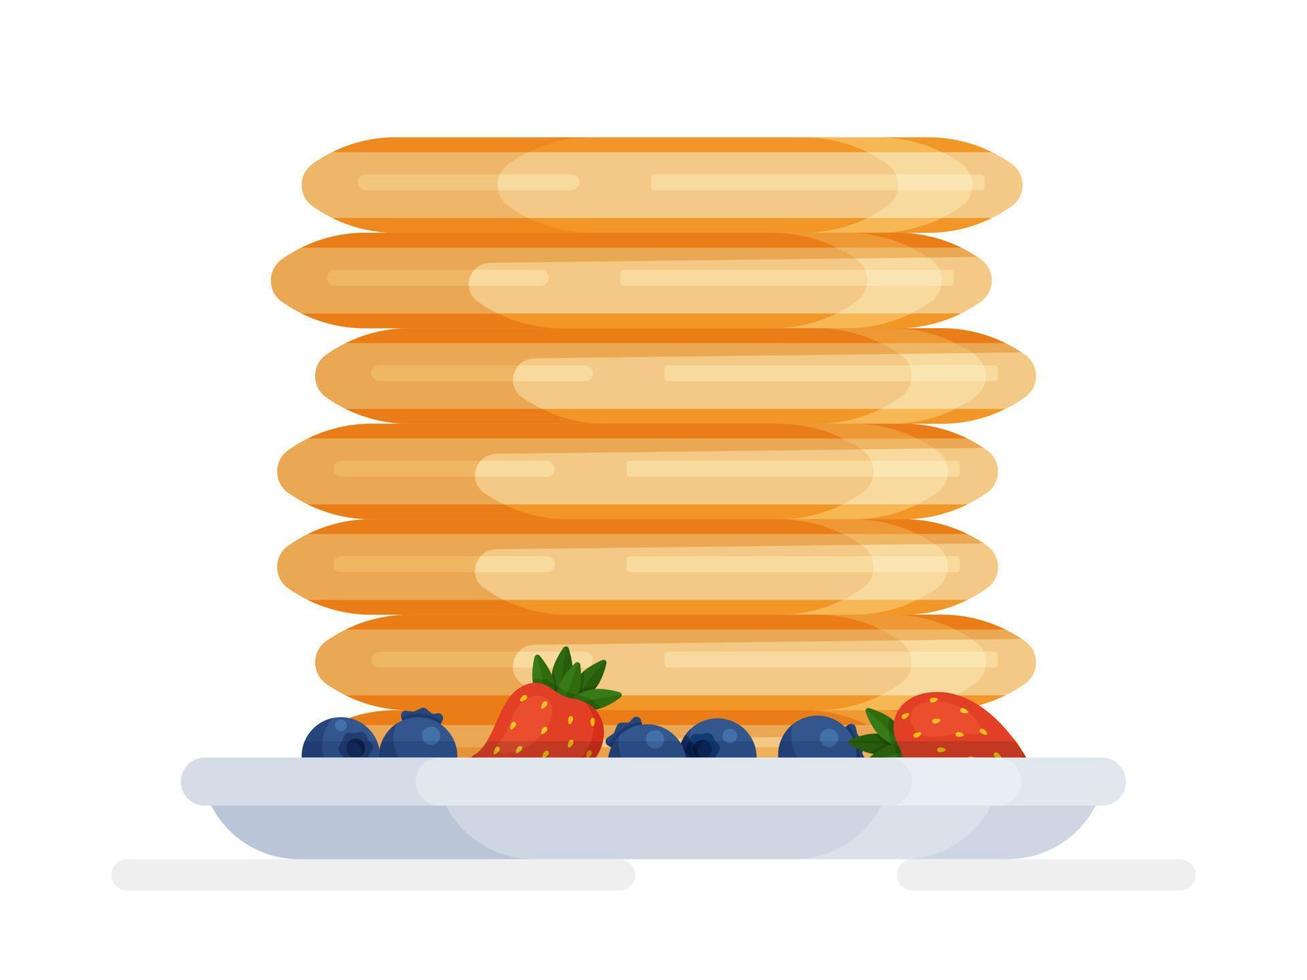 ilustração em vetor de uma pilha isolada de panquecas com frutas. vetor de dia nacional da panqueca.